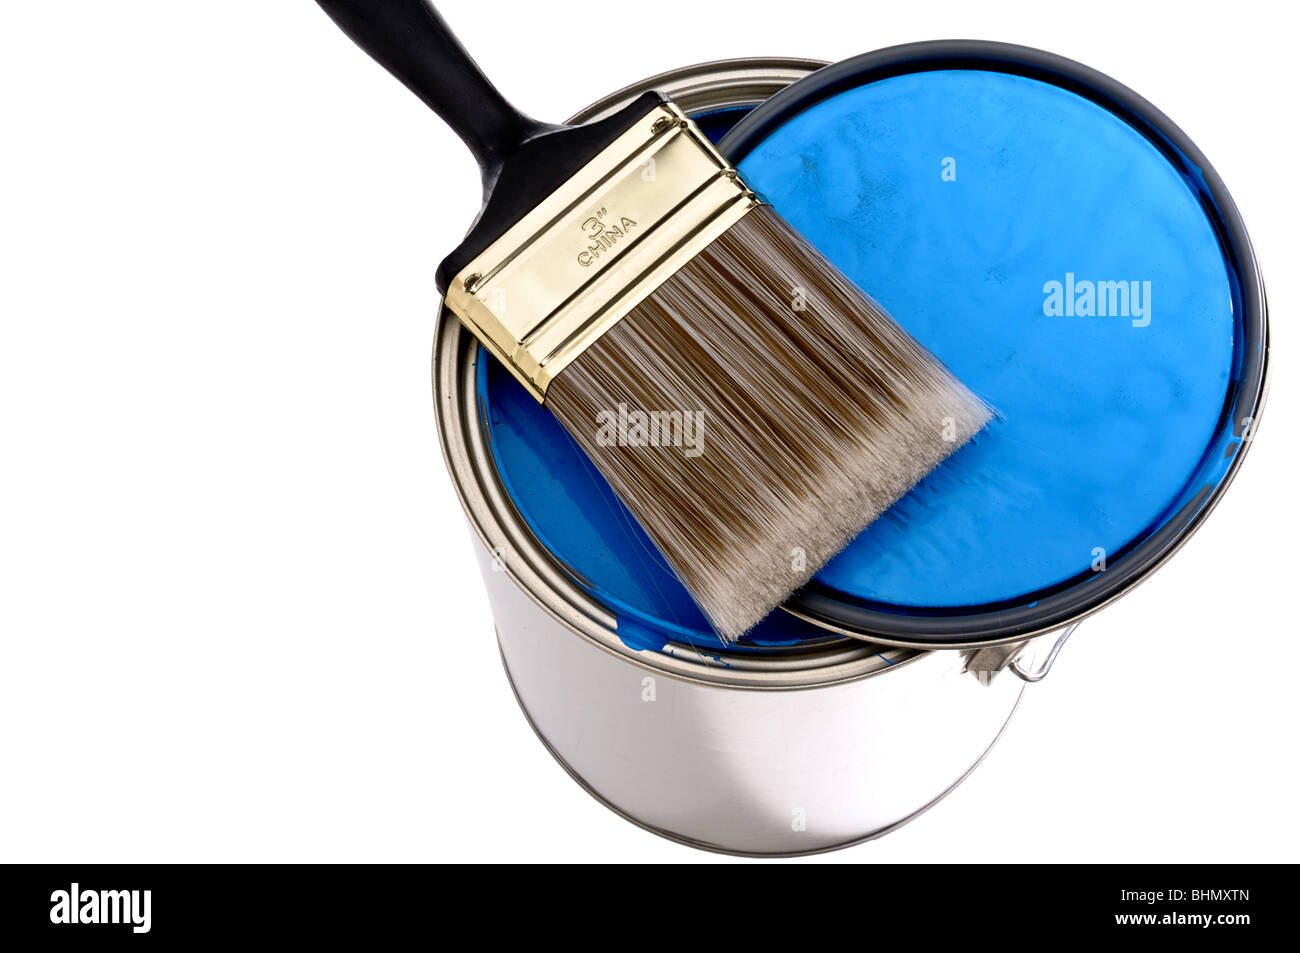 Le pinceau et le couvercle sur le dessus d'une boîte de peinture bleu Banque D'Images